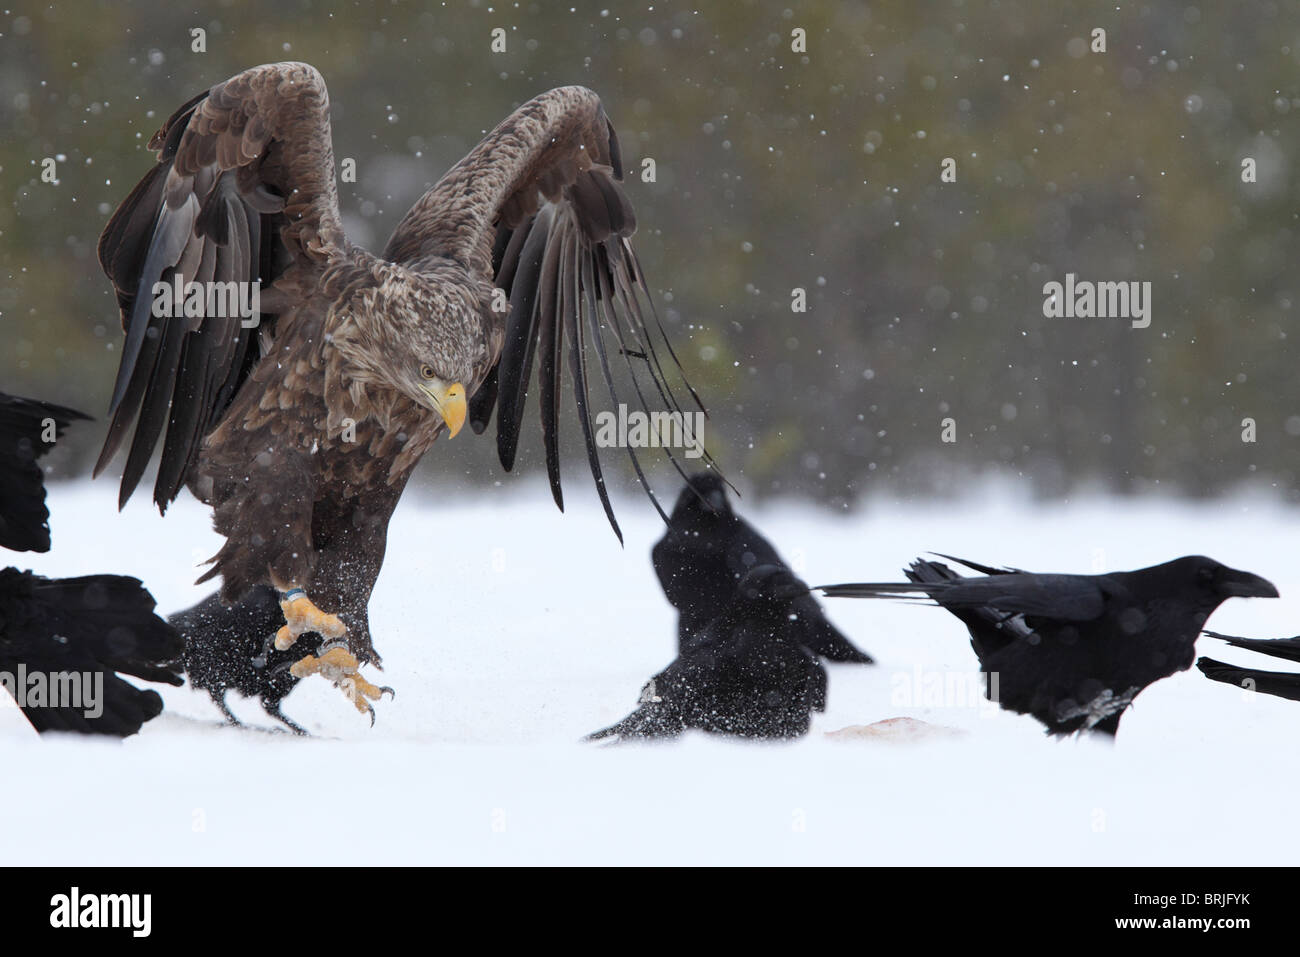 Adultes sauvages à queue blanche (Haliaetus albicilla) et le Corbeau (Corvus corax) dans la neige. L'Europe Banque D'Images